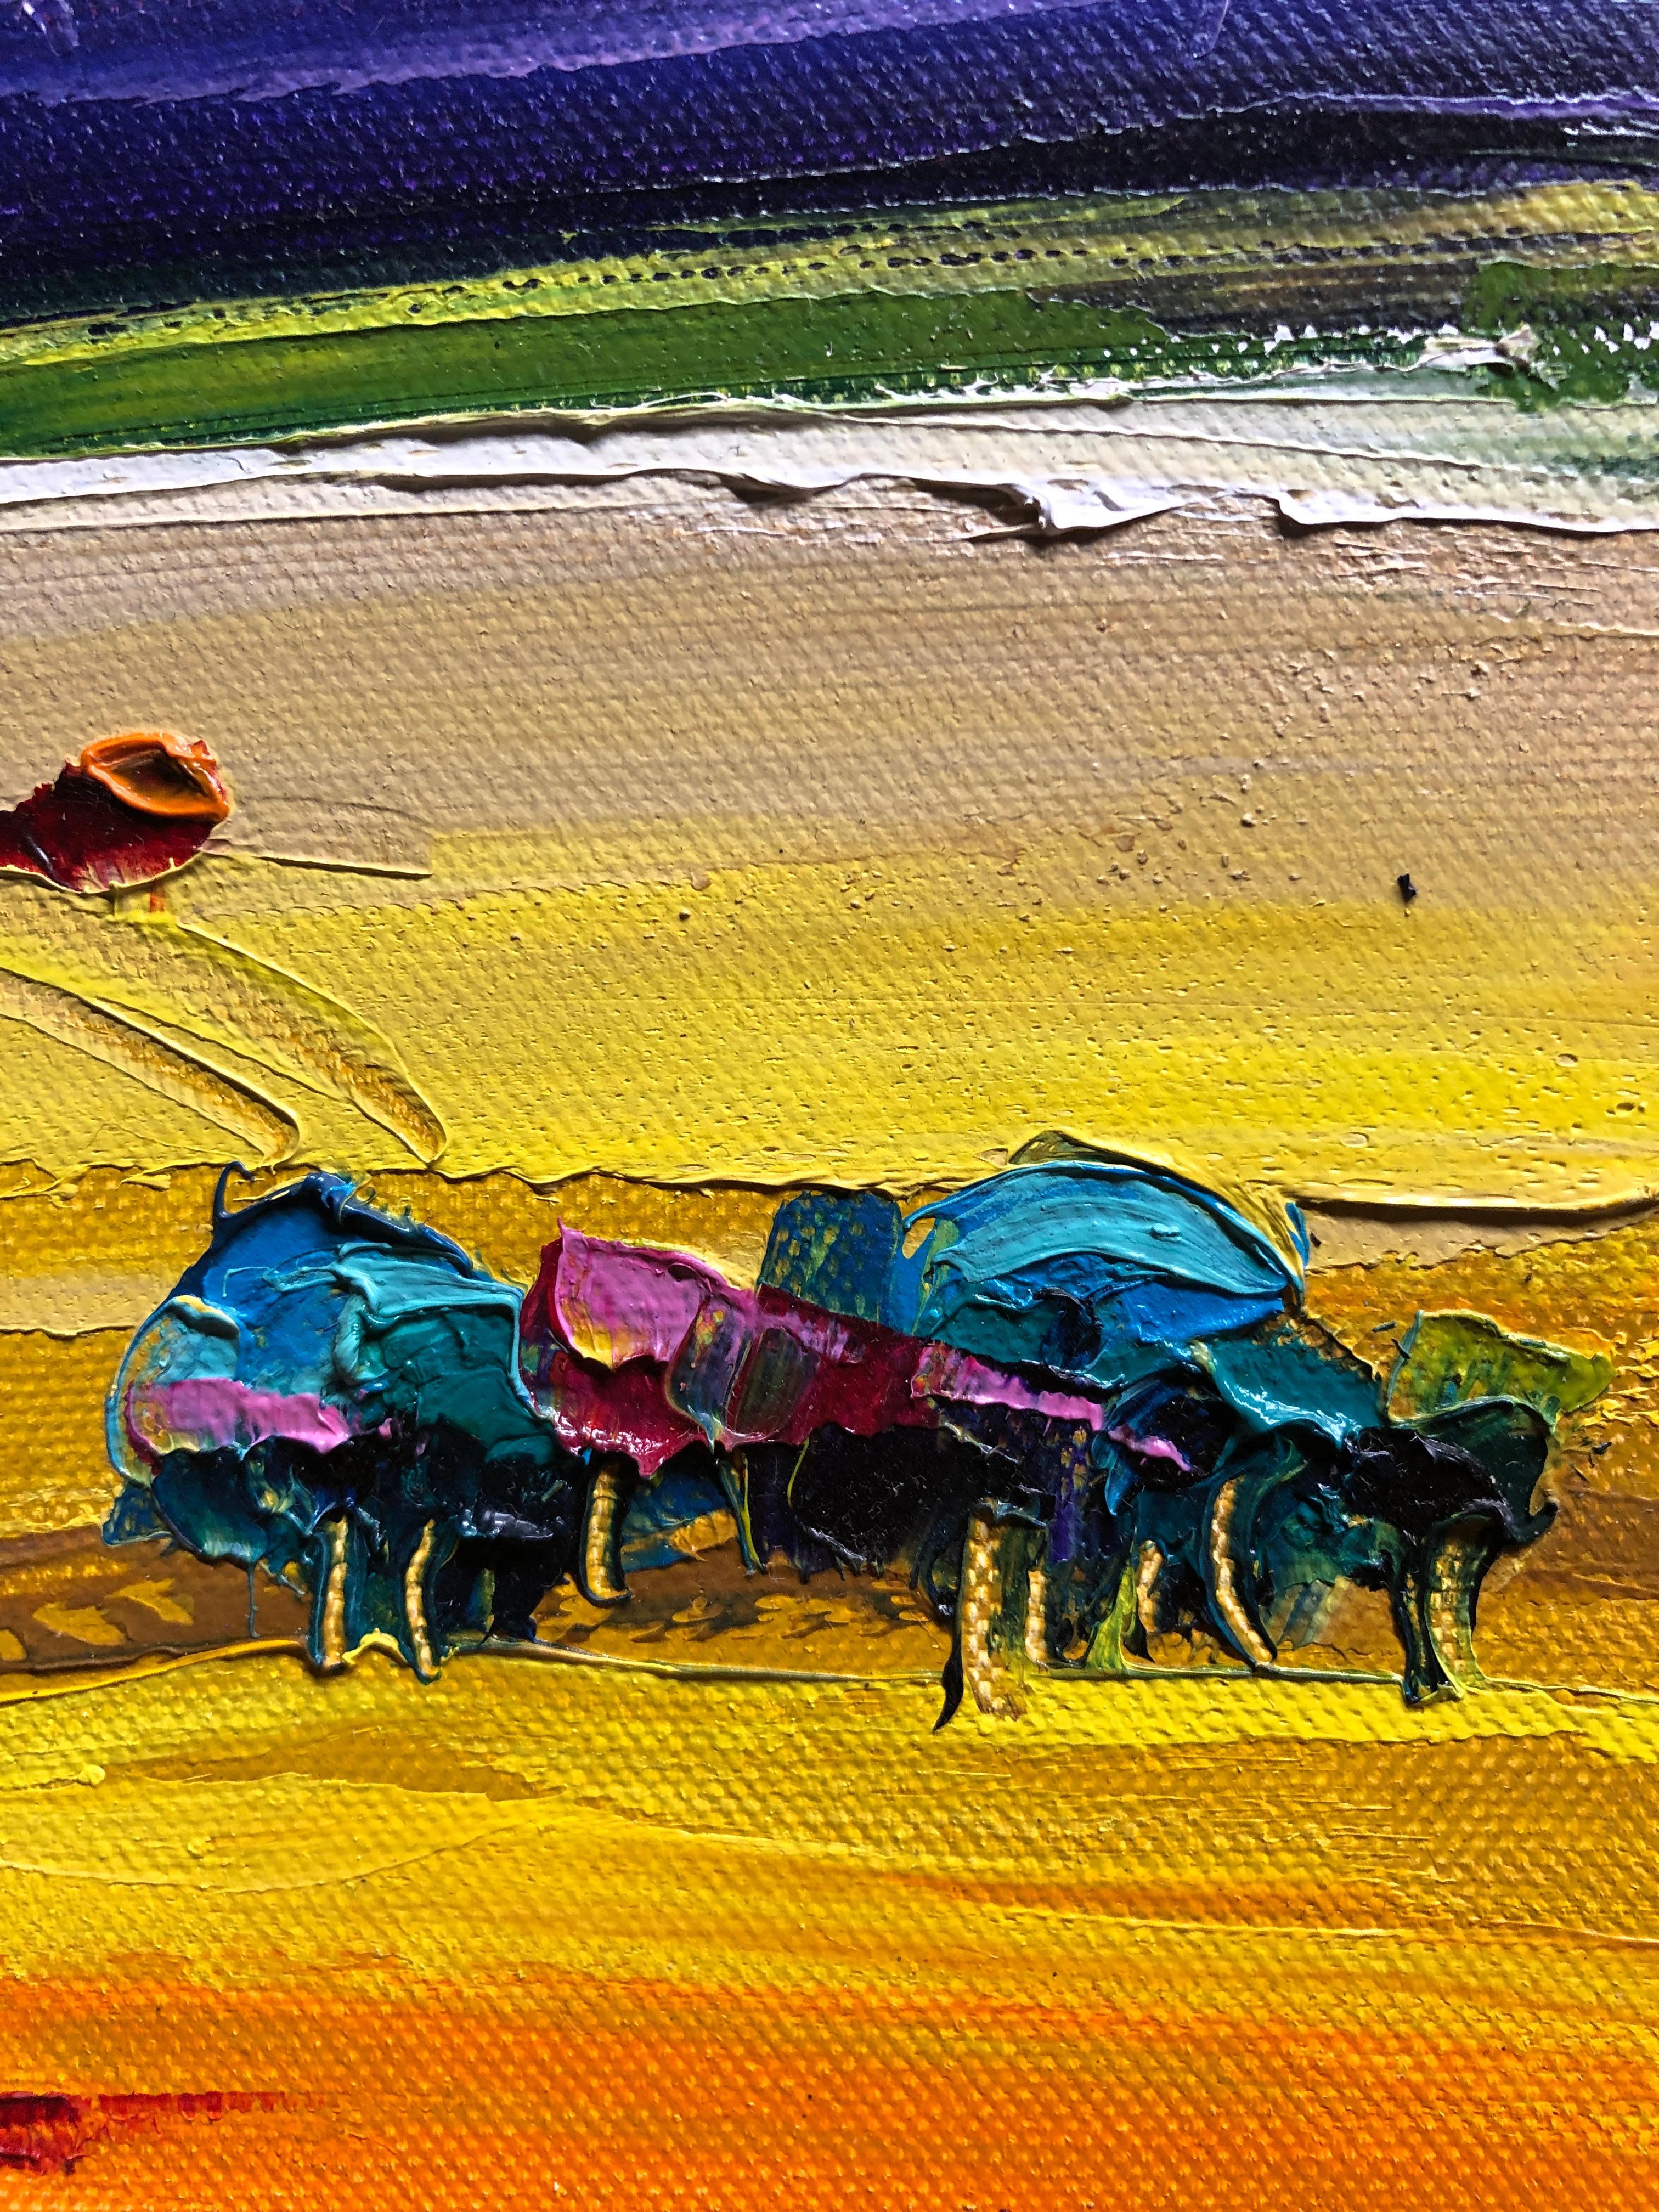  
Landscape Vibrant Oil Painting Palette Knife 16x12